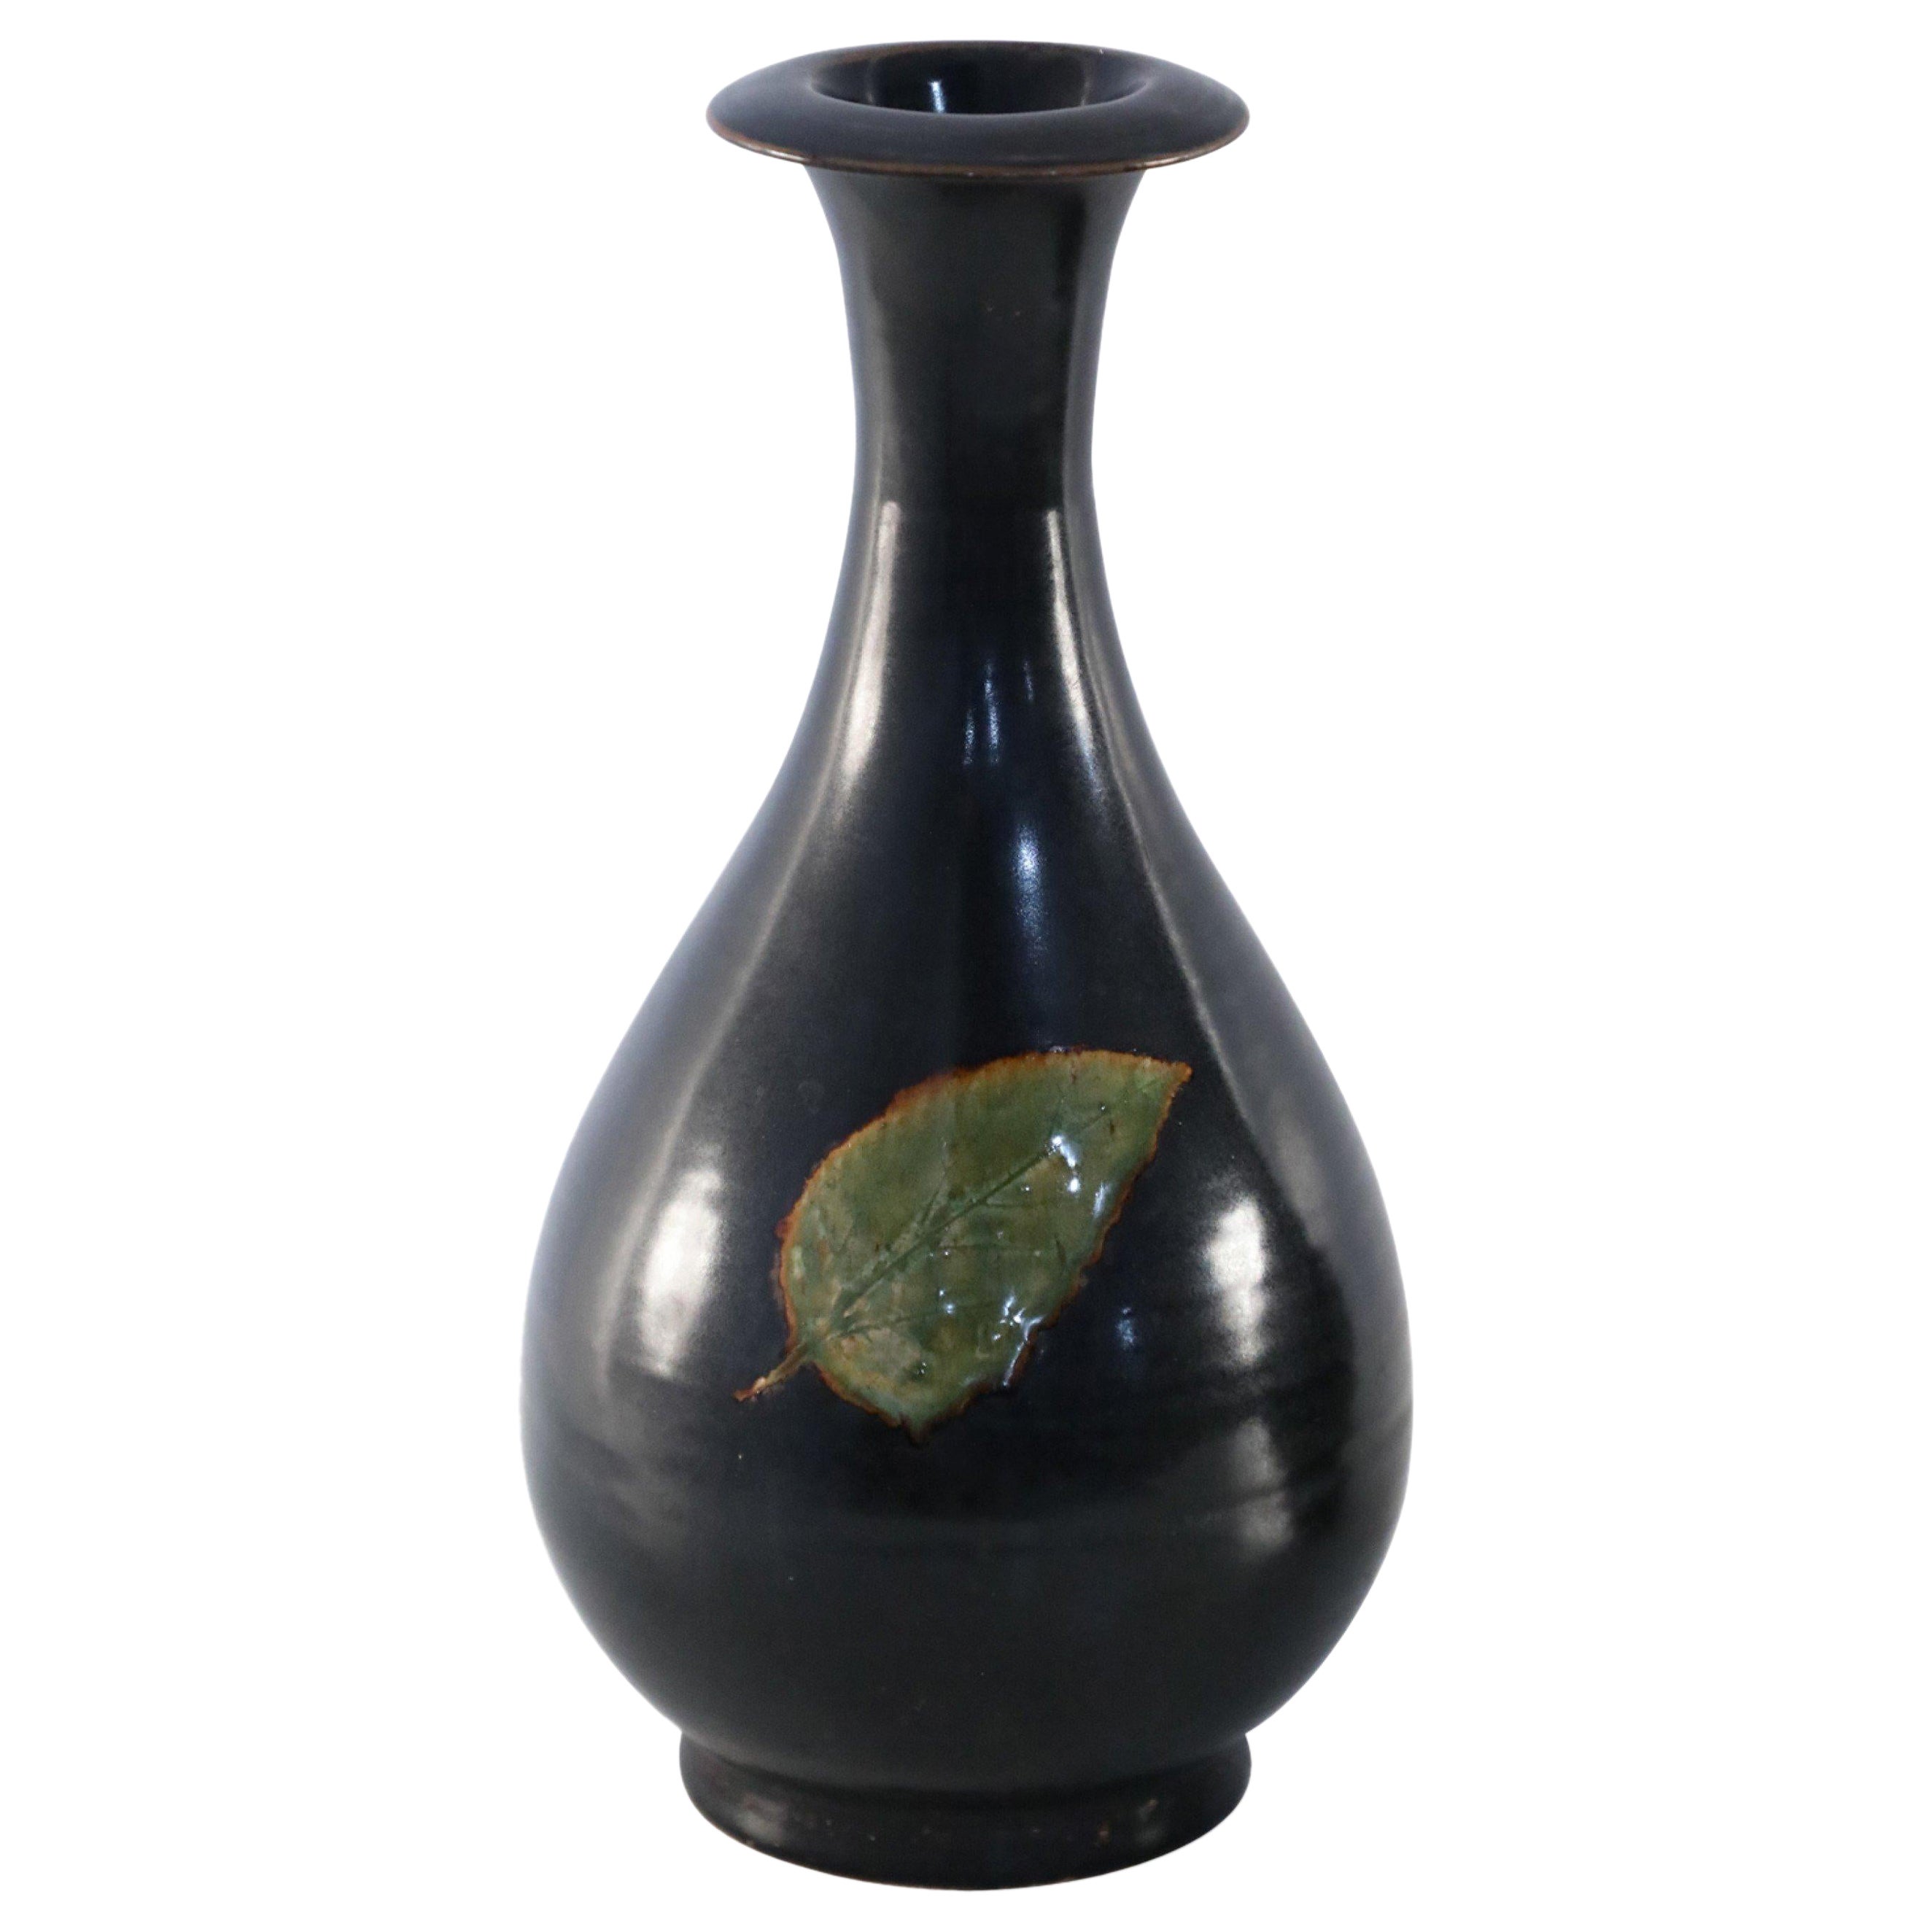 Chinesische birnenförmige Vase aus glasiertem Porzellan mit schwarzem und grünem Blatt